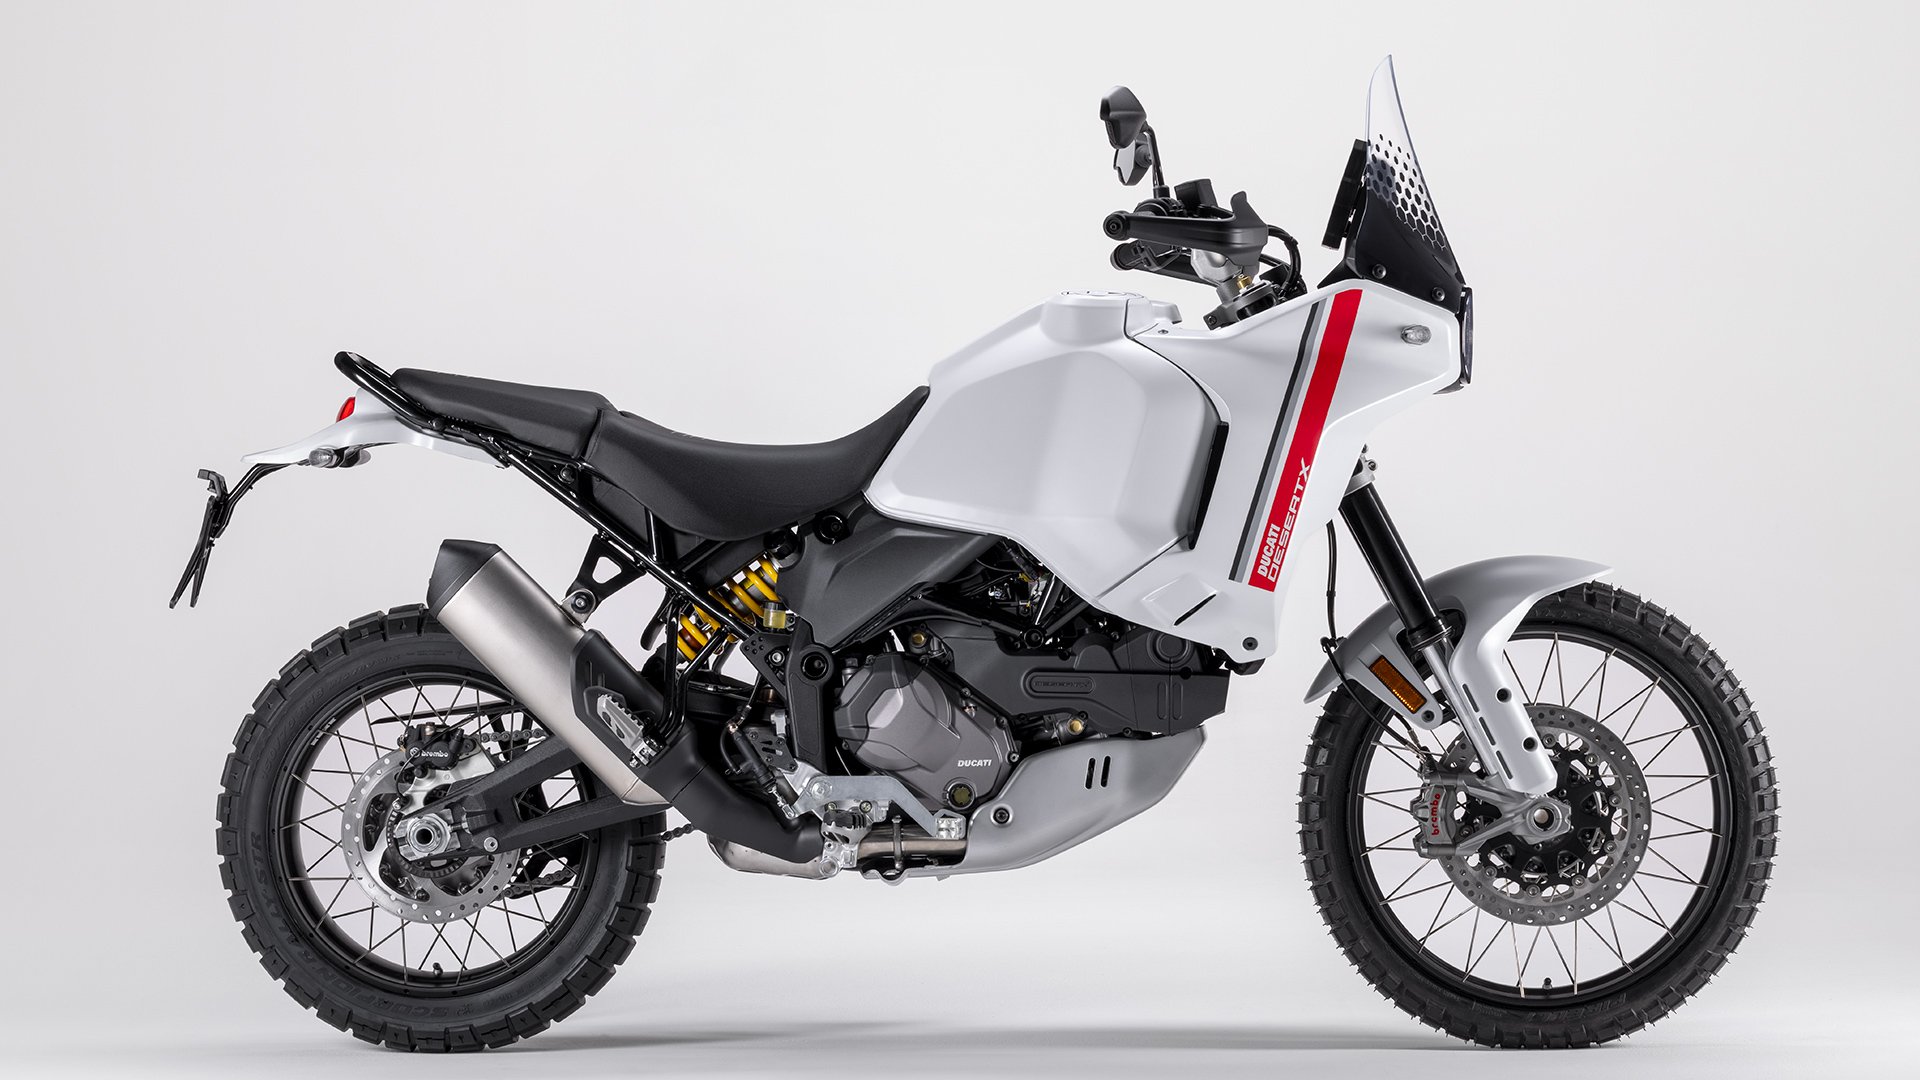 Conheça o modelo Ducati DesertX, uma das novas motos para 2022. Fonte: Ducati.